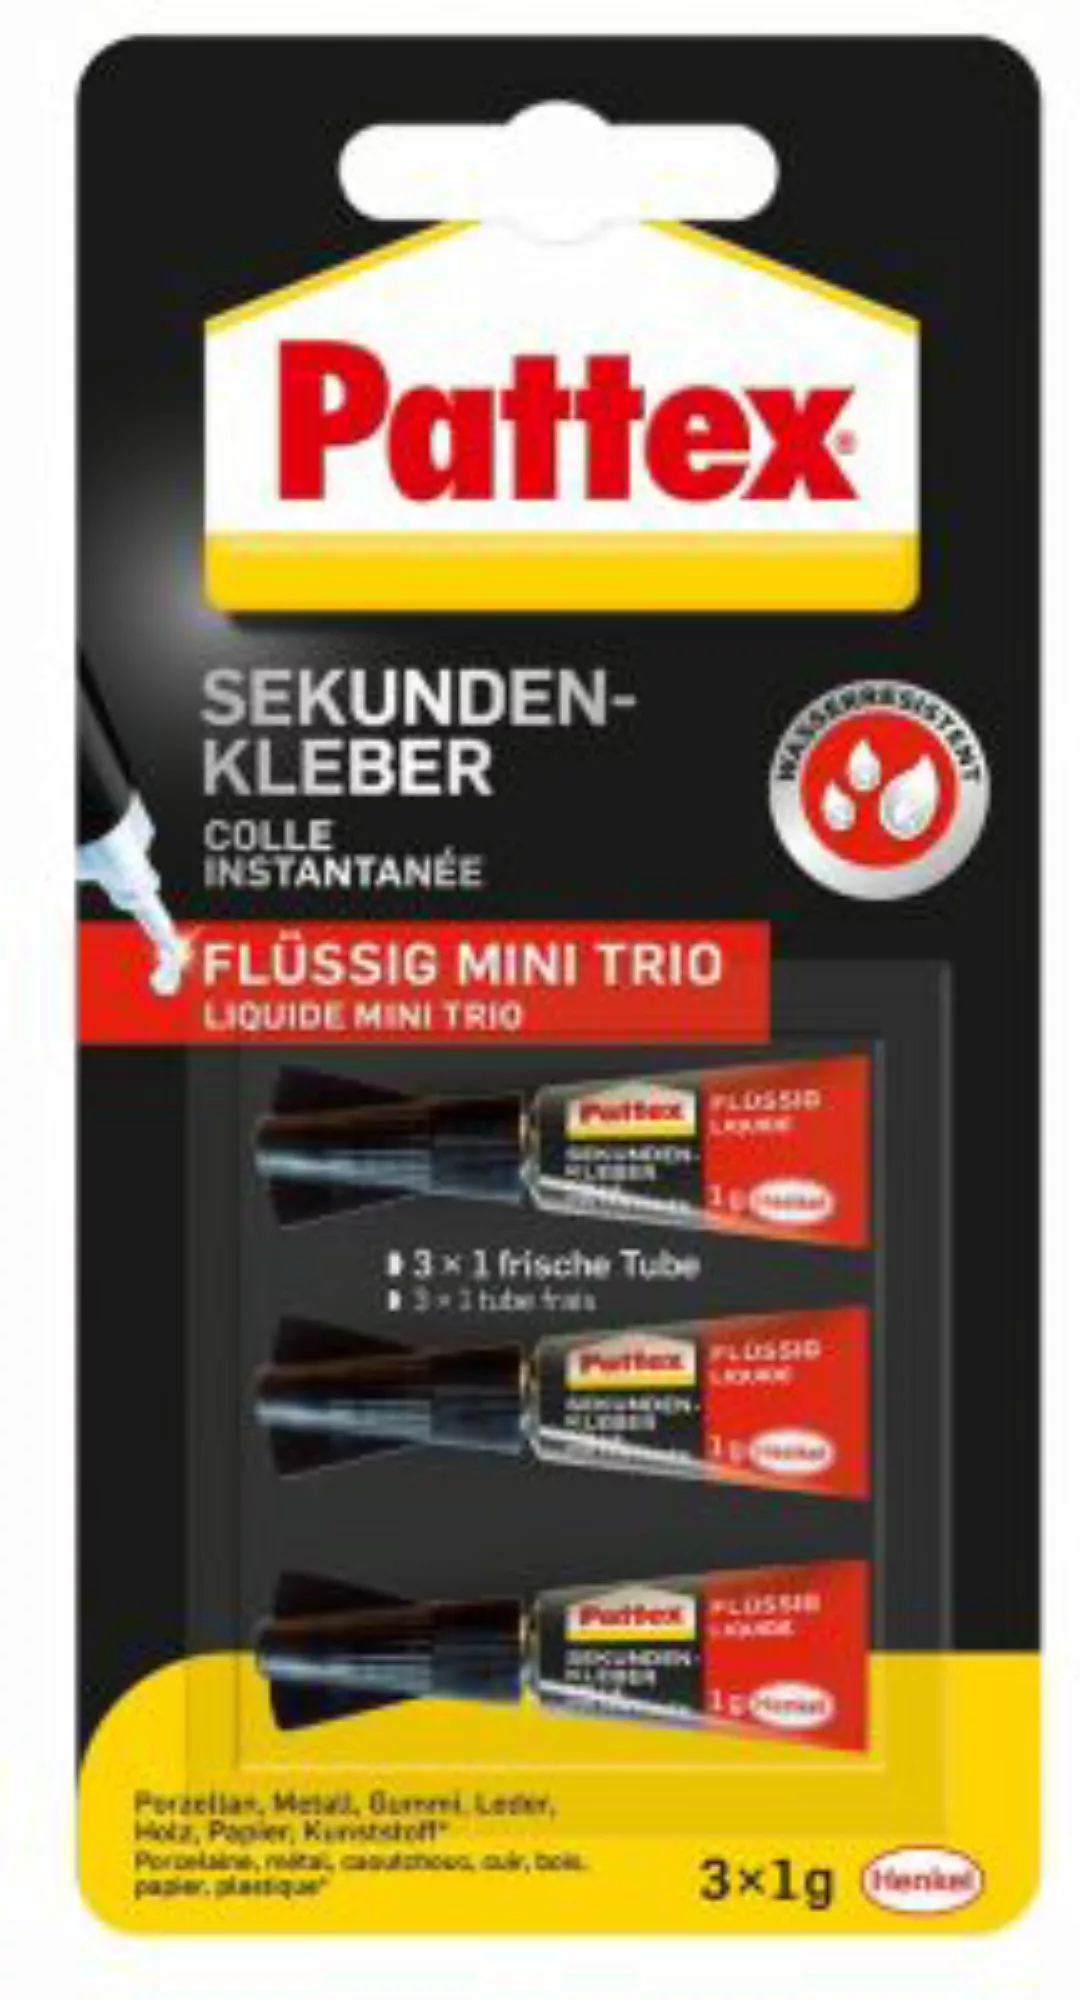 Pattex Flüssigkleber Sekundenkleber Flüssig Mini-Trio farblos 3x1g günstig online kaufen